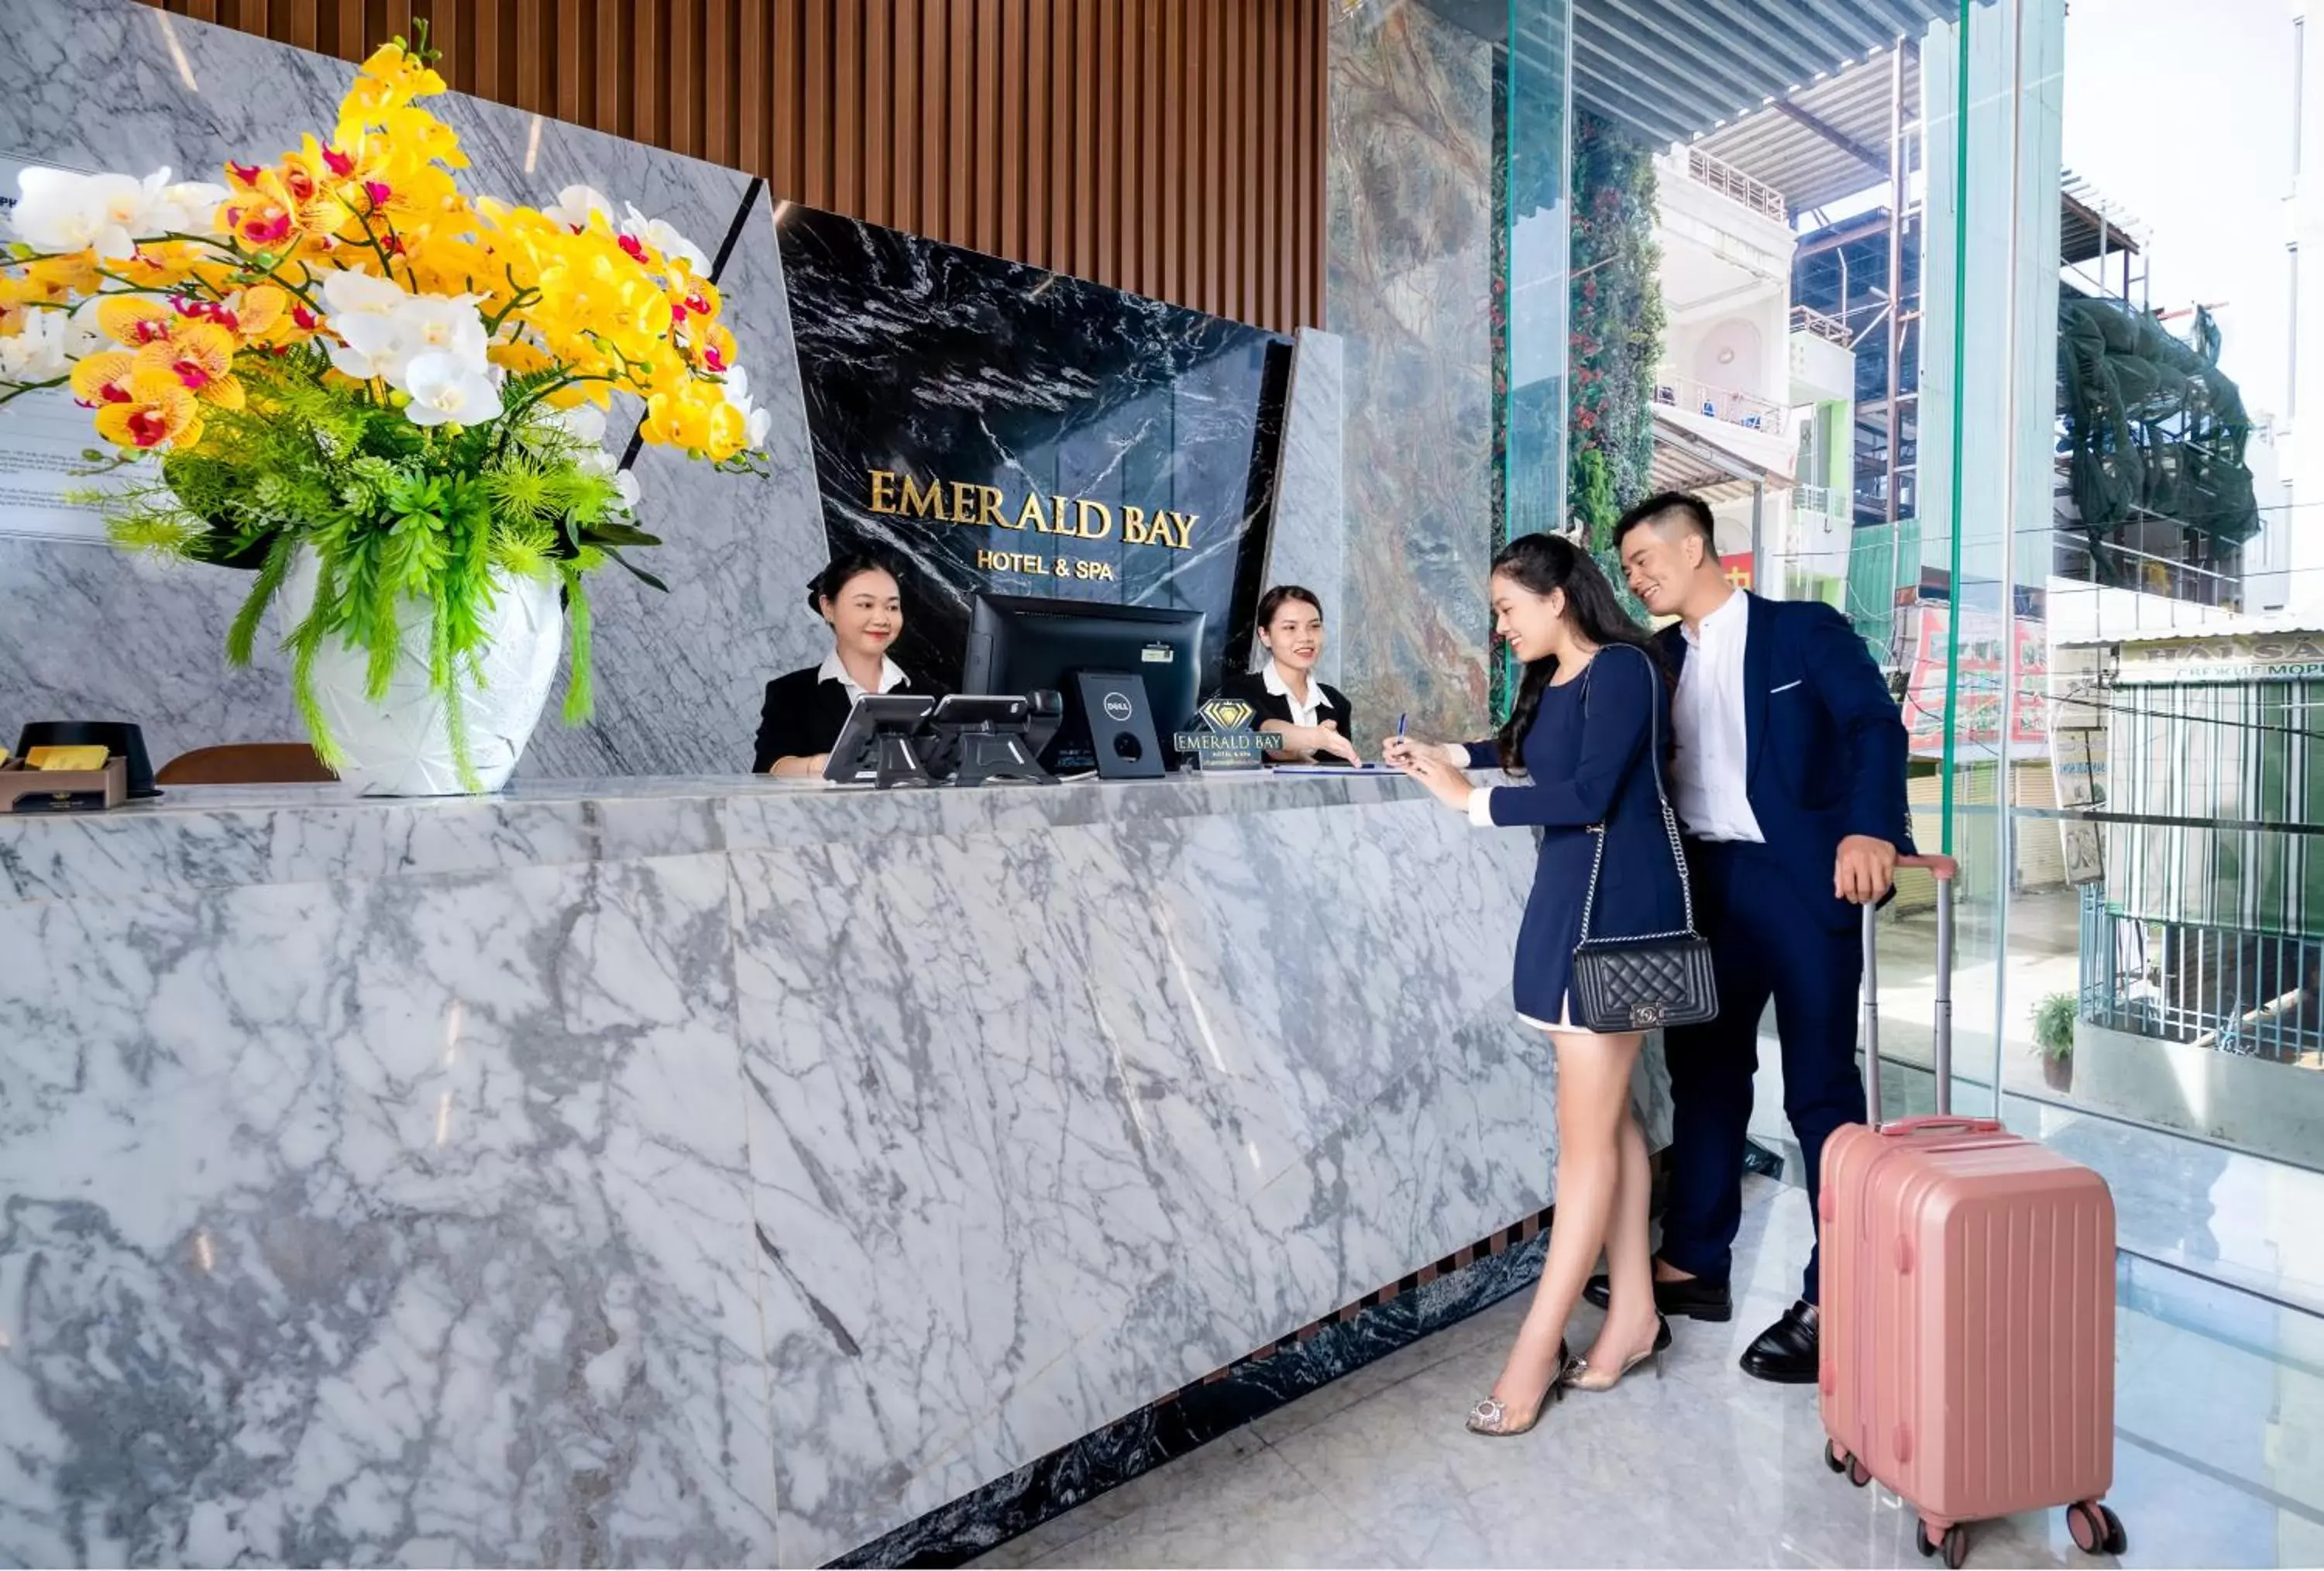 Lobby or reception in Emerald Bay Hotel & Spa